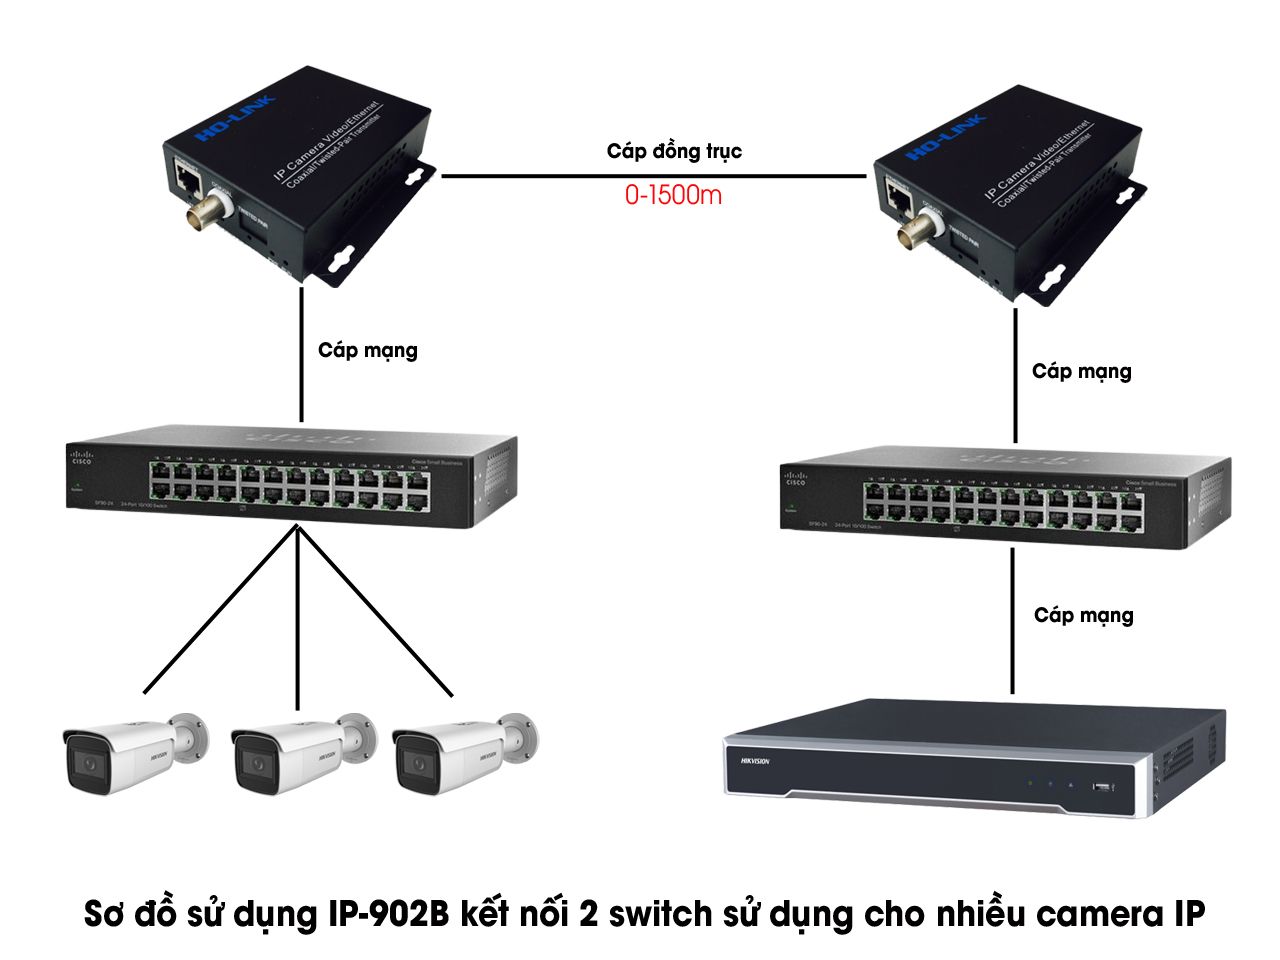 Sơ đồ sử dụng IP-902B kết nối 2 switch sử dụng cho nhiều Camera IP